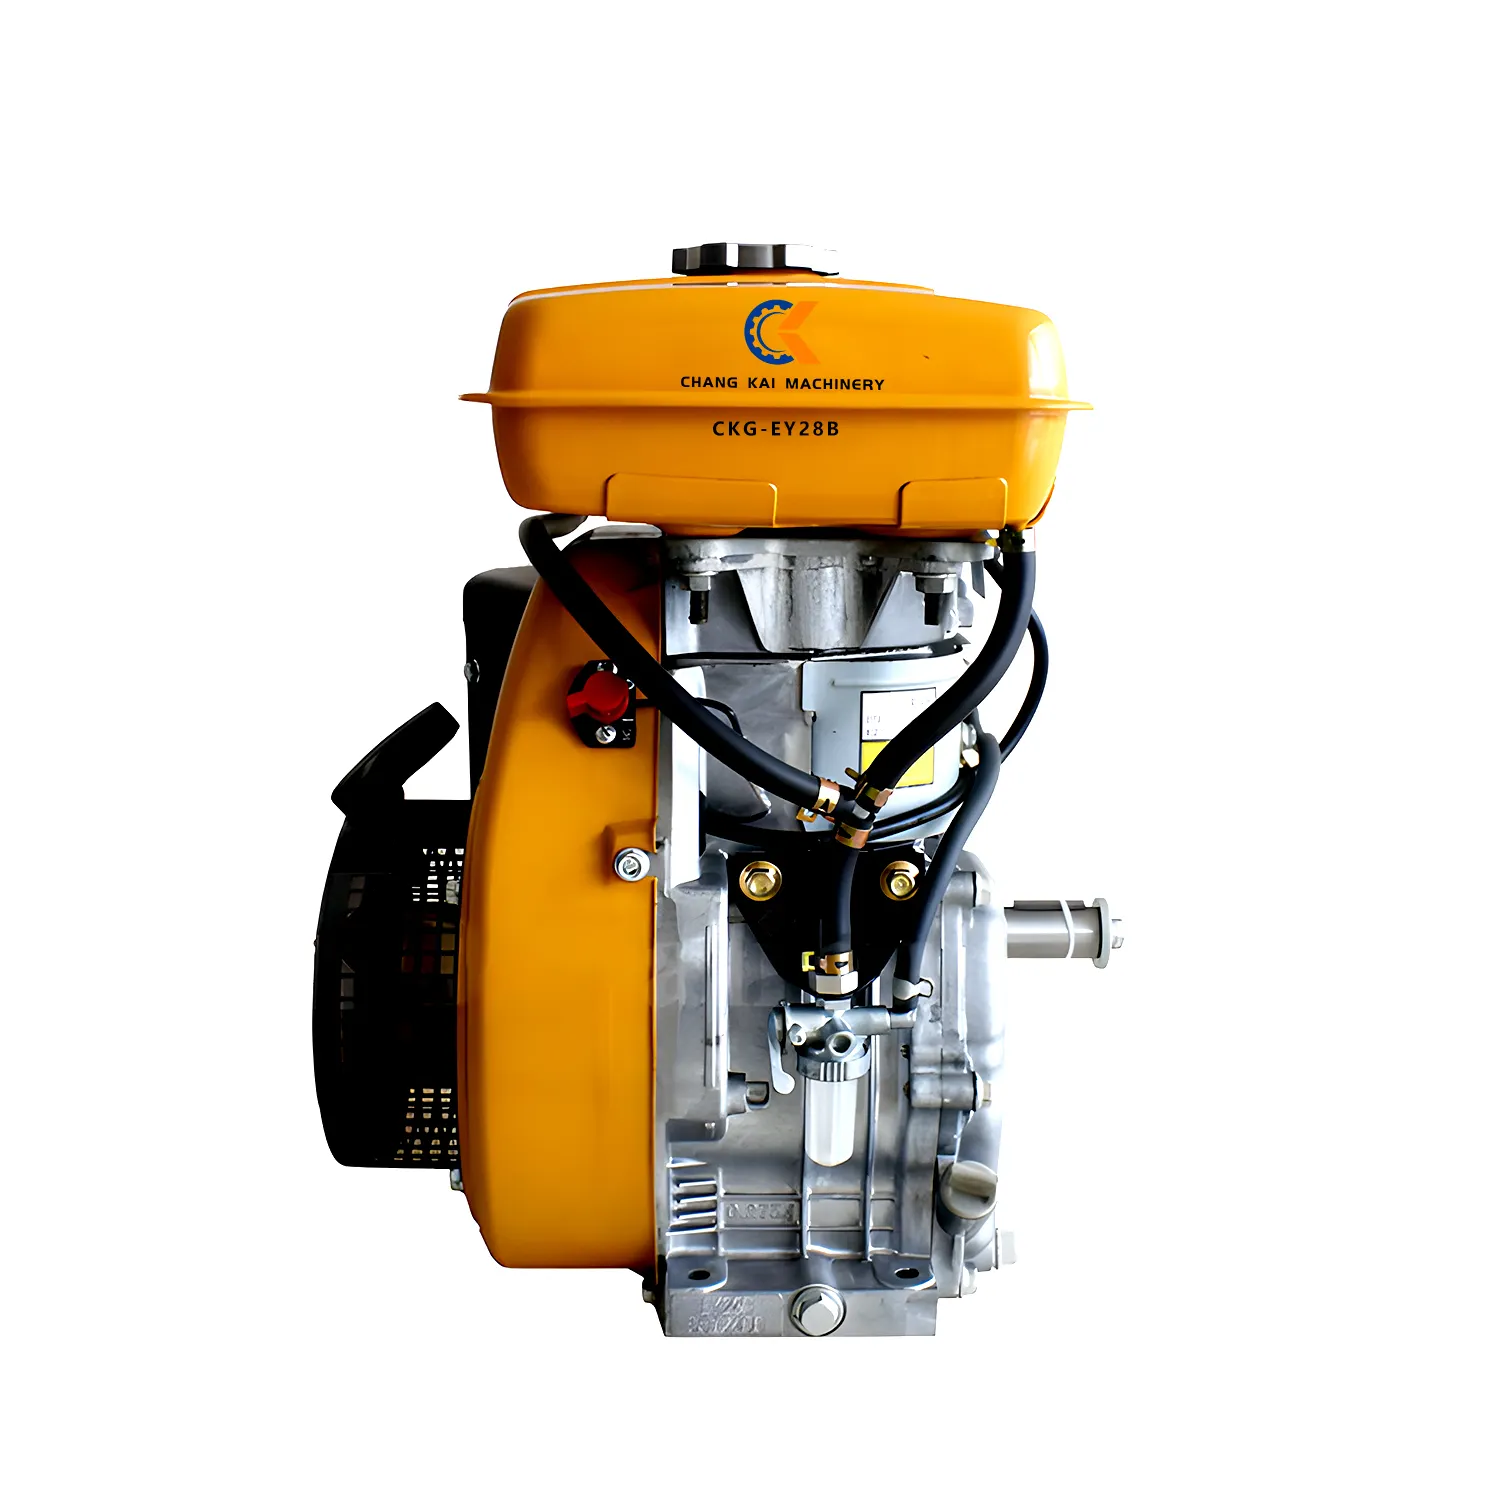 Robin động cơ xăng ey28b 7.5 HP Nhà cung cấp động cơ xăng CKG-EY28B ey28b không khí sạch hơn là thích hợp cho ey28b và ey28 Máy phát điện